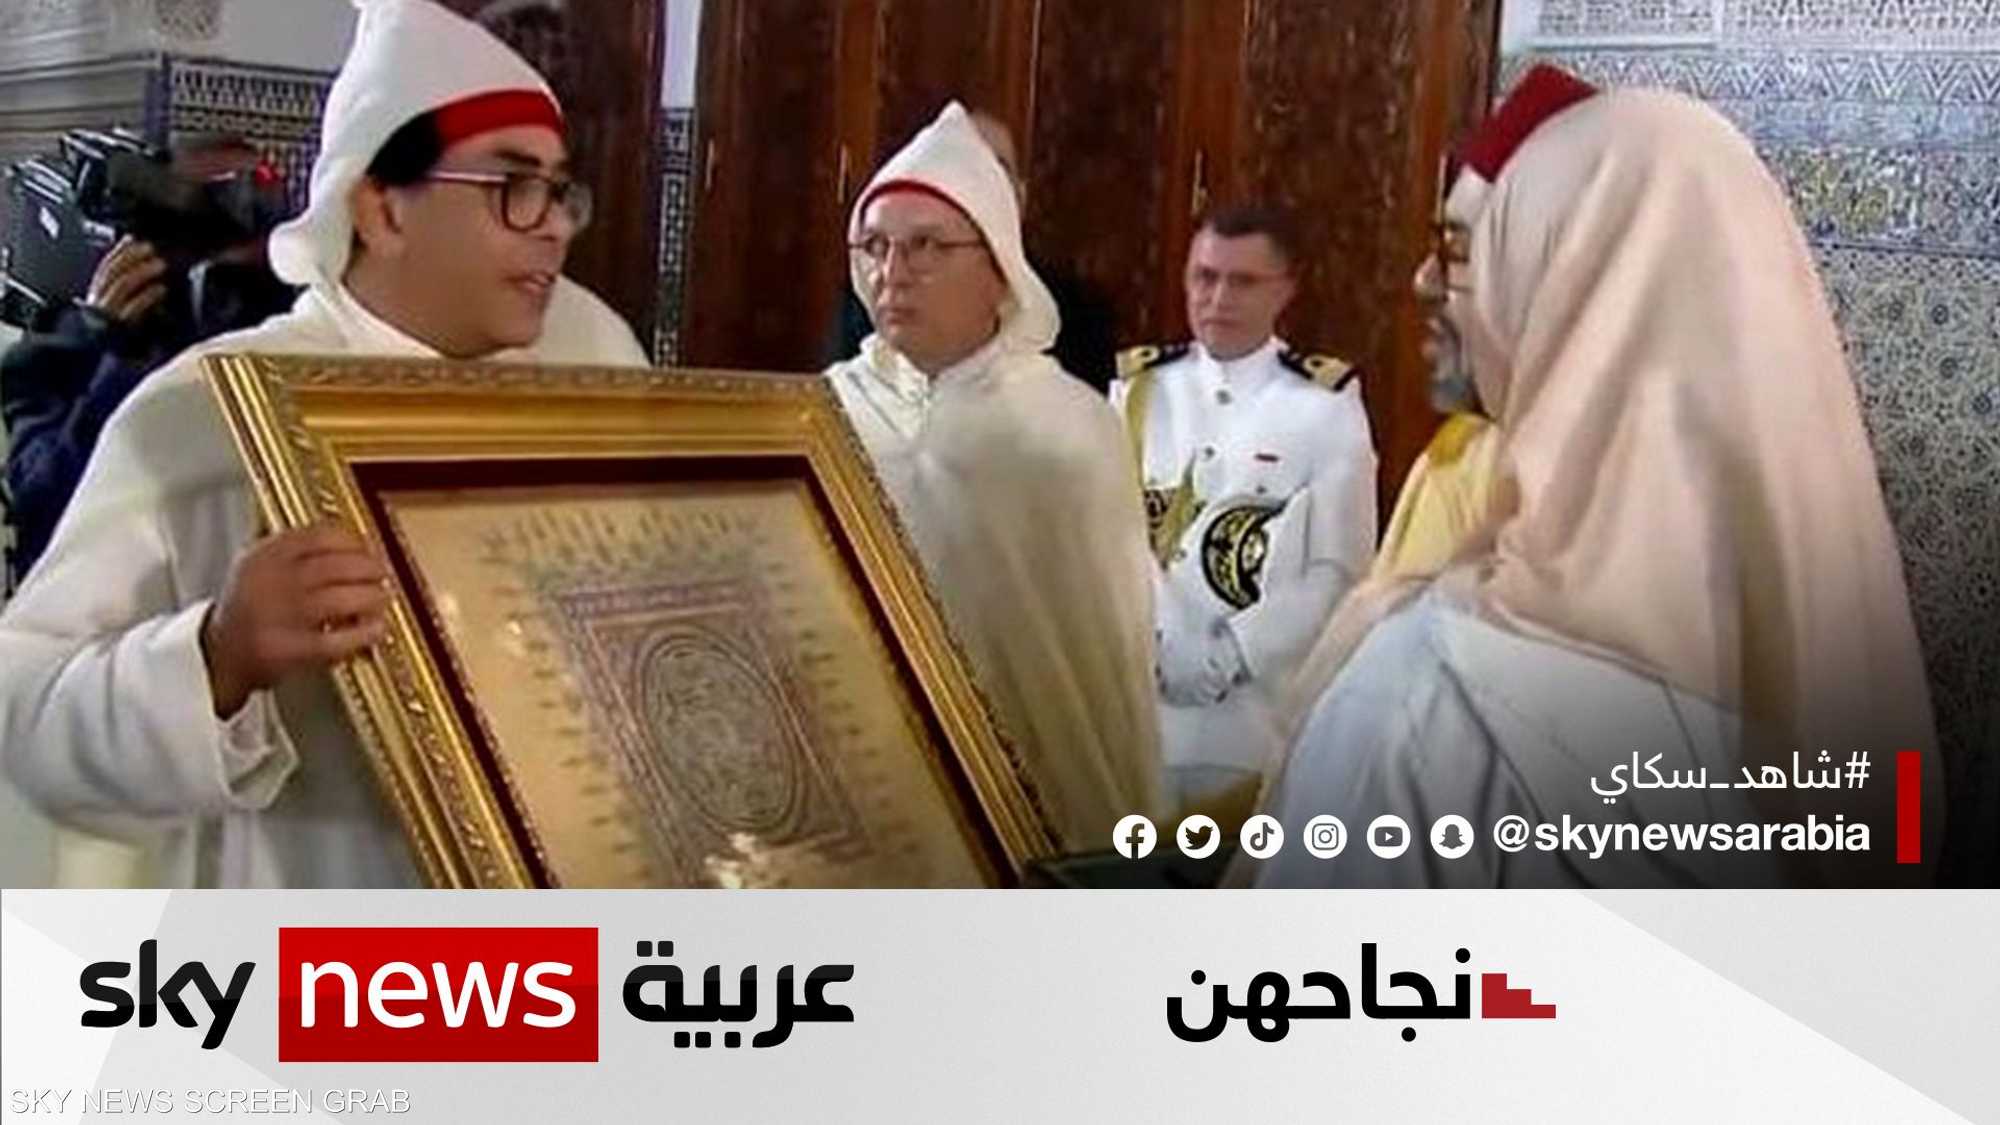 ليلى الجملي.. مغربية تتوج بجائزة التفوق في الزخرفة